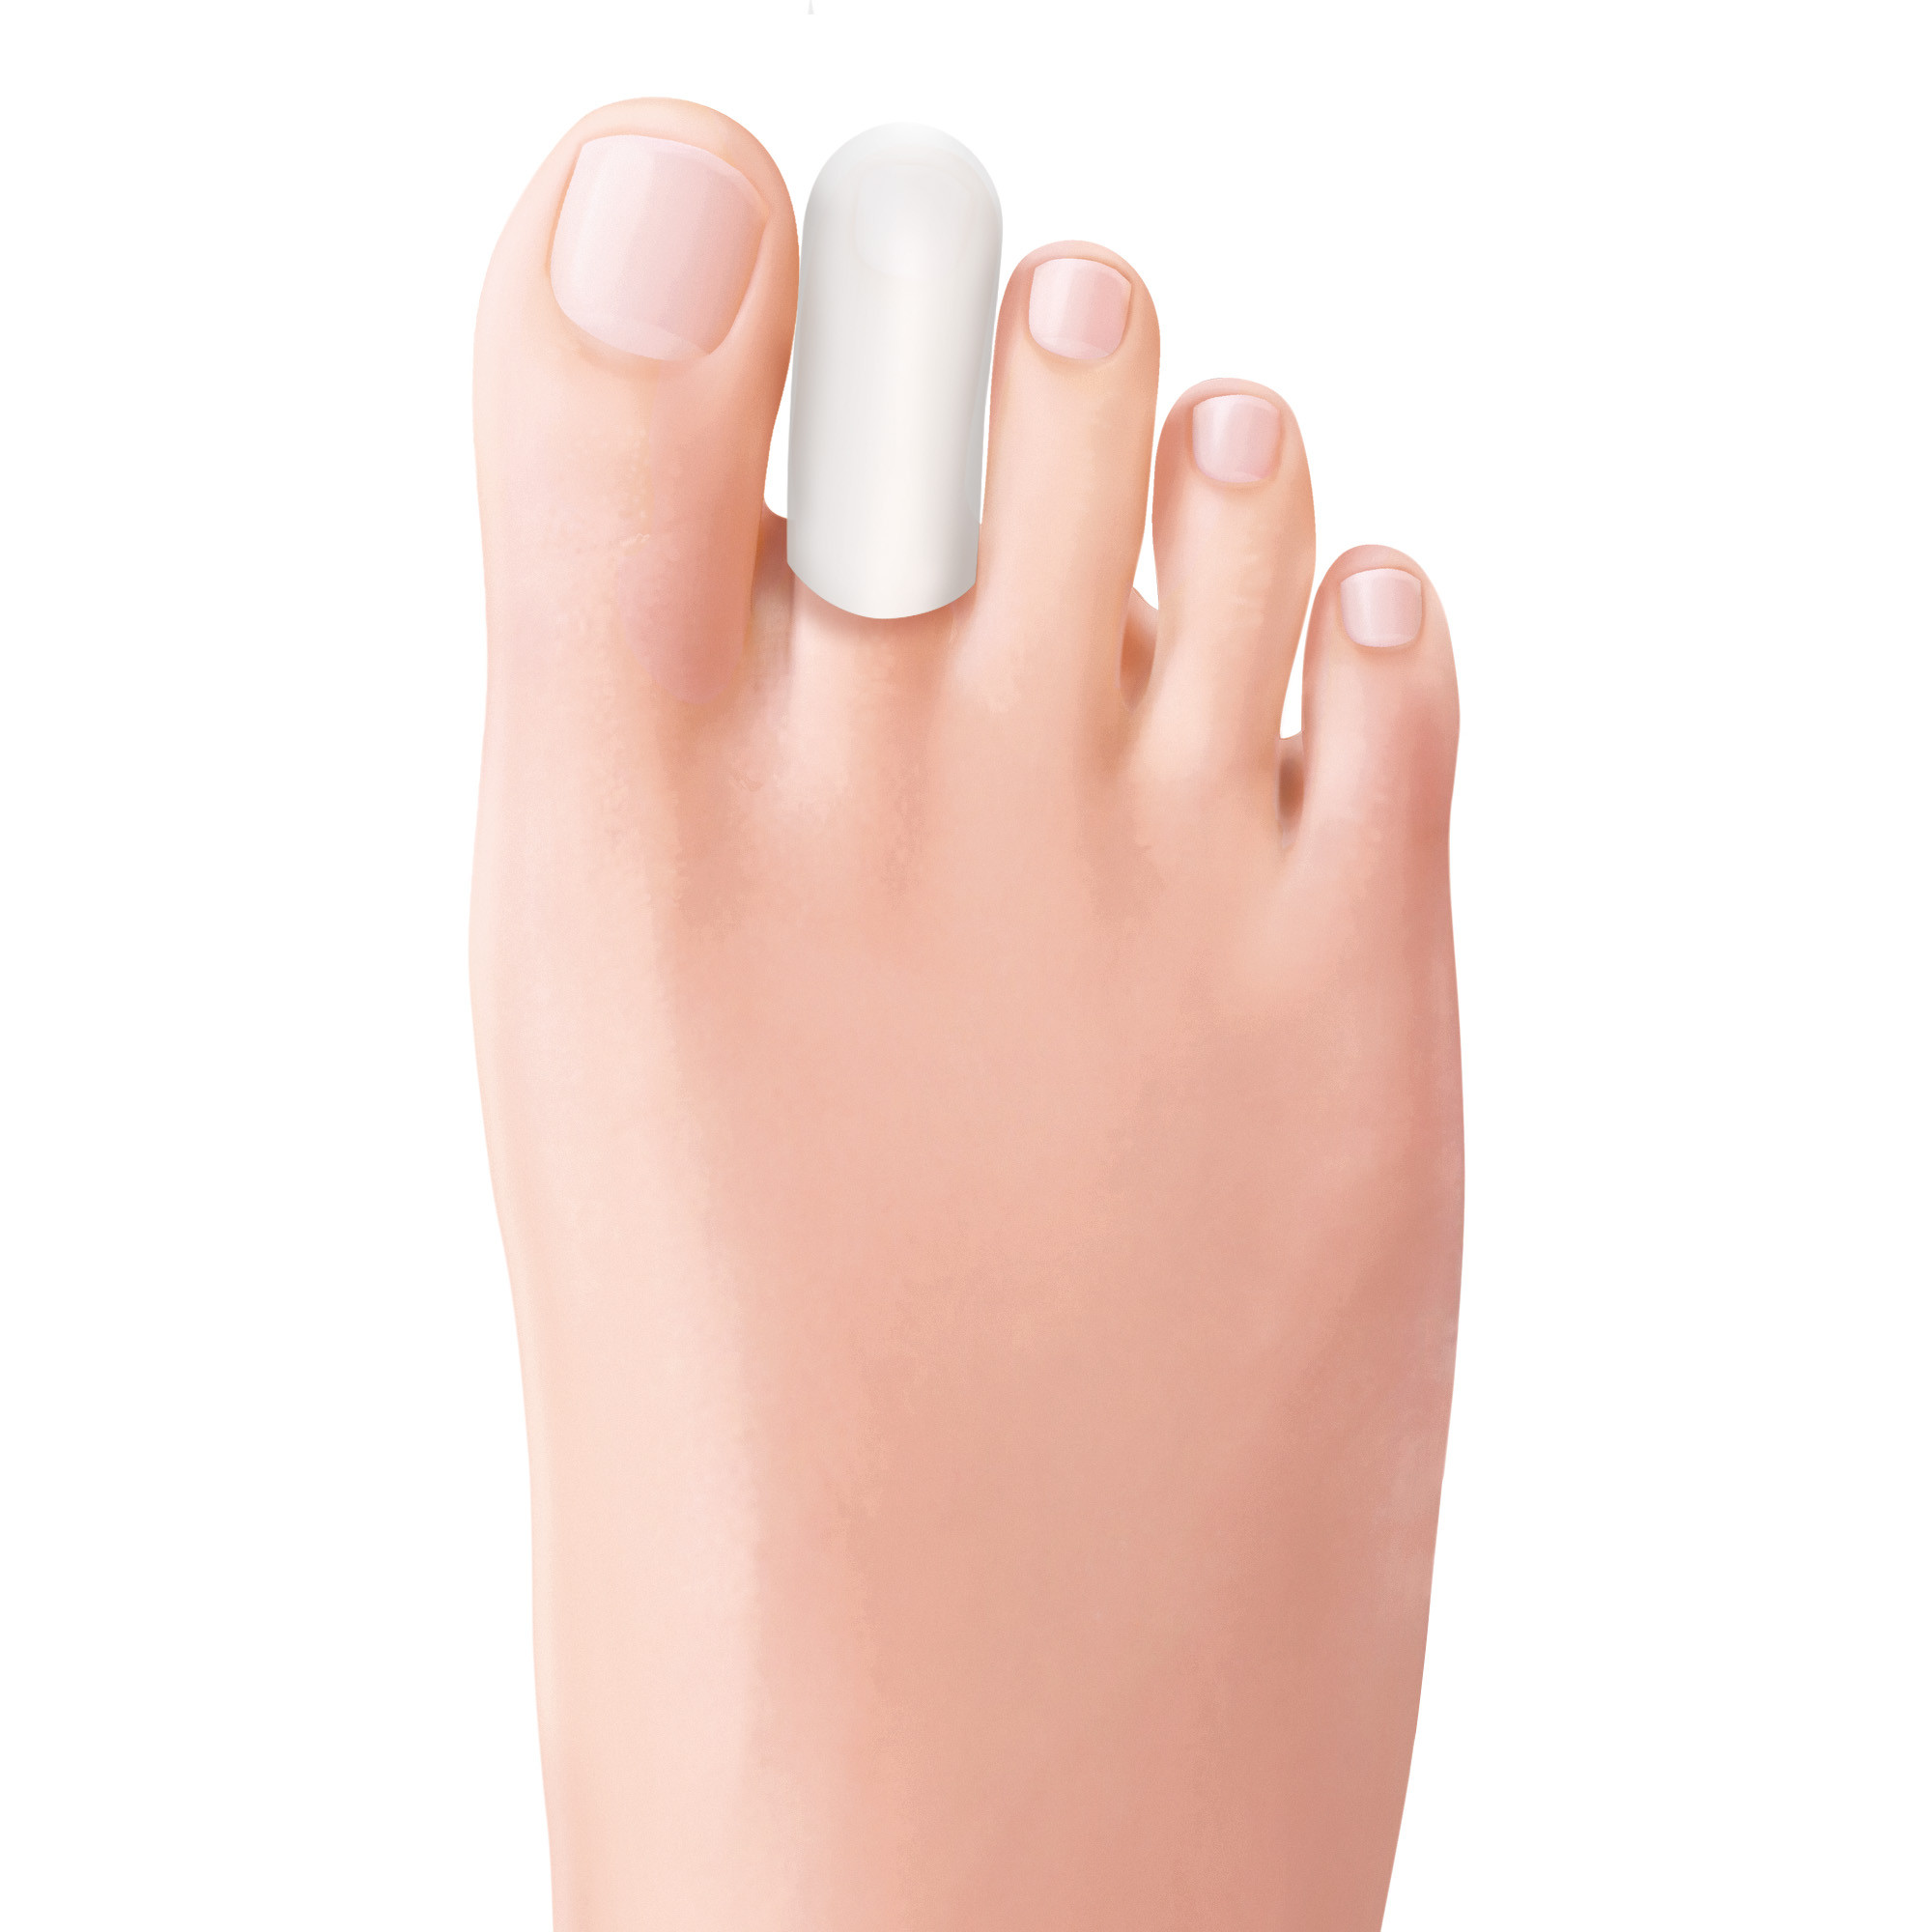 Protezione per dita dei piedi Bio-Gel in Tecniwork Polymer Gel trasparente misura Large 1 pz